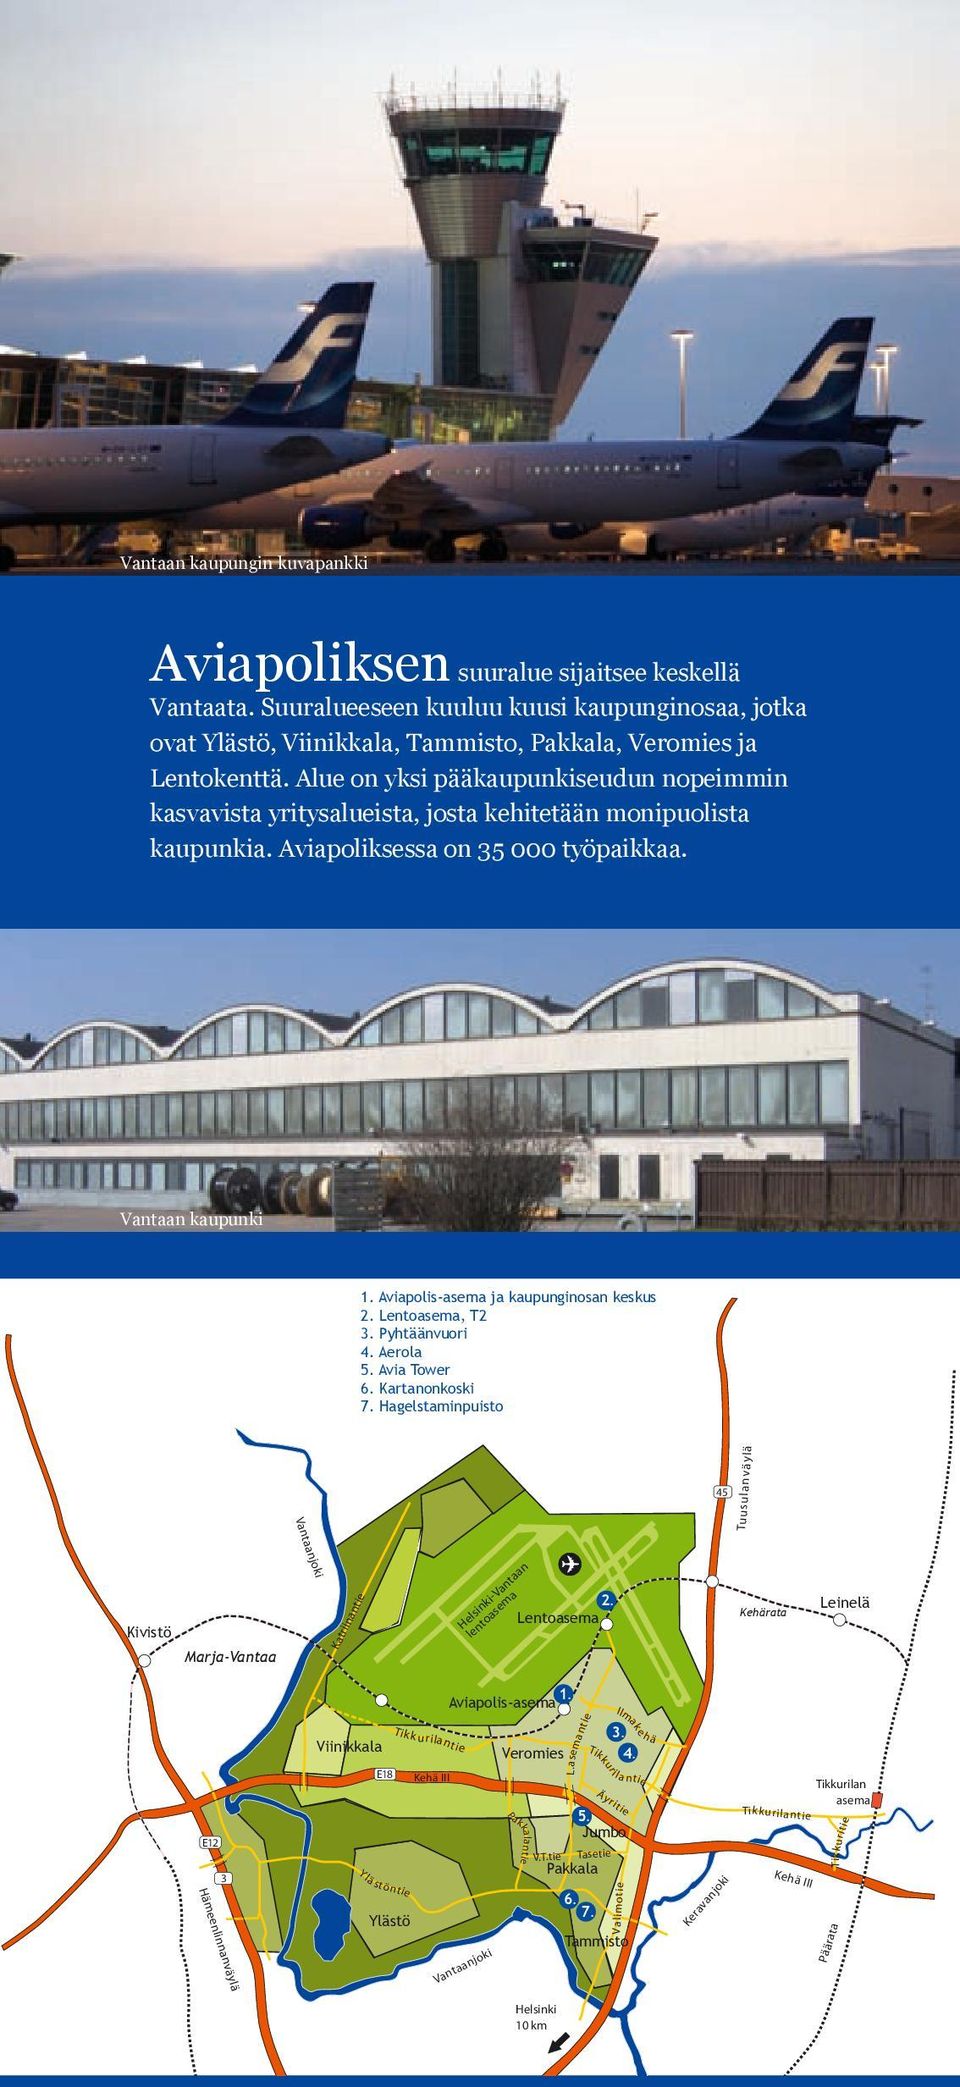 Aviapolis-asema ja kaupunginosan keskus 2. Lentoasema, T2 3. Pyhtäänvuori 4. Aerola 5. Avia Tower 6. Kartanonkoski 7.